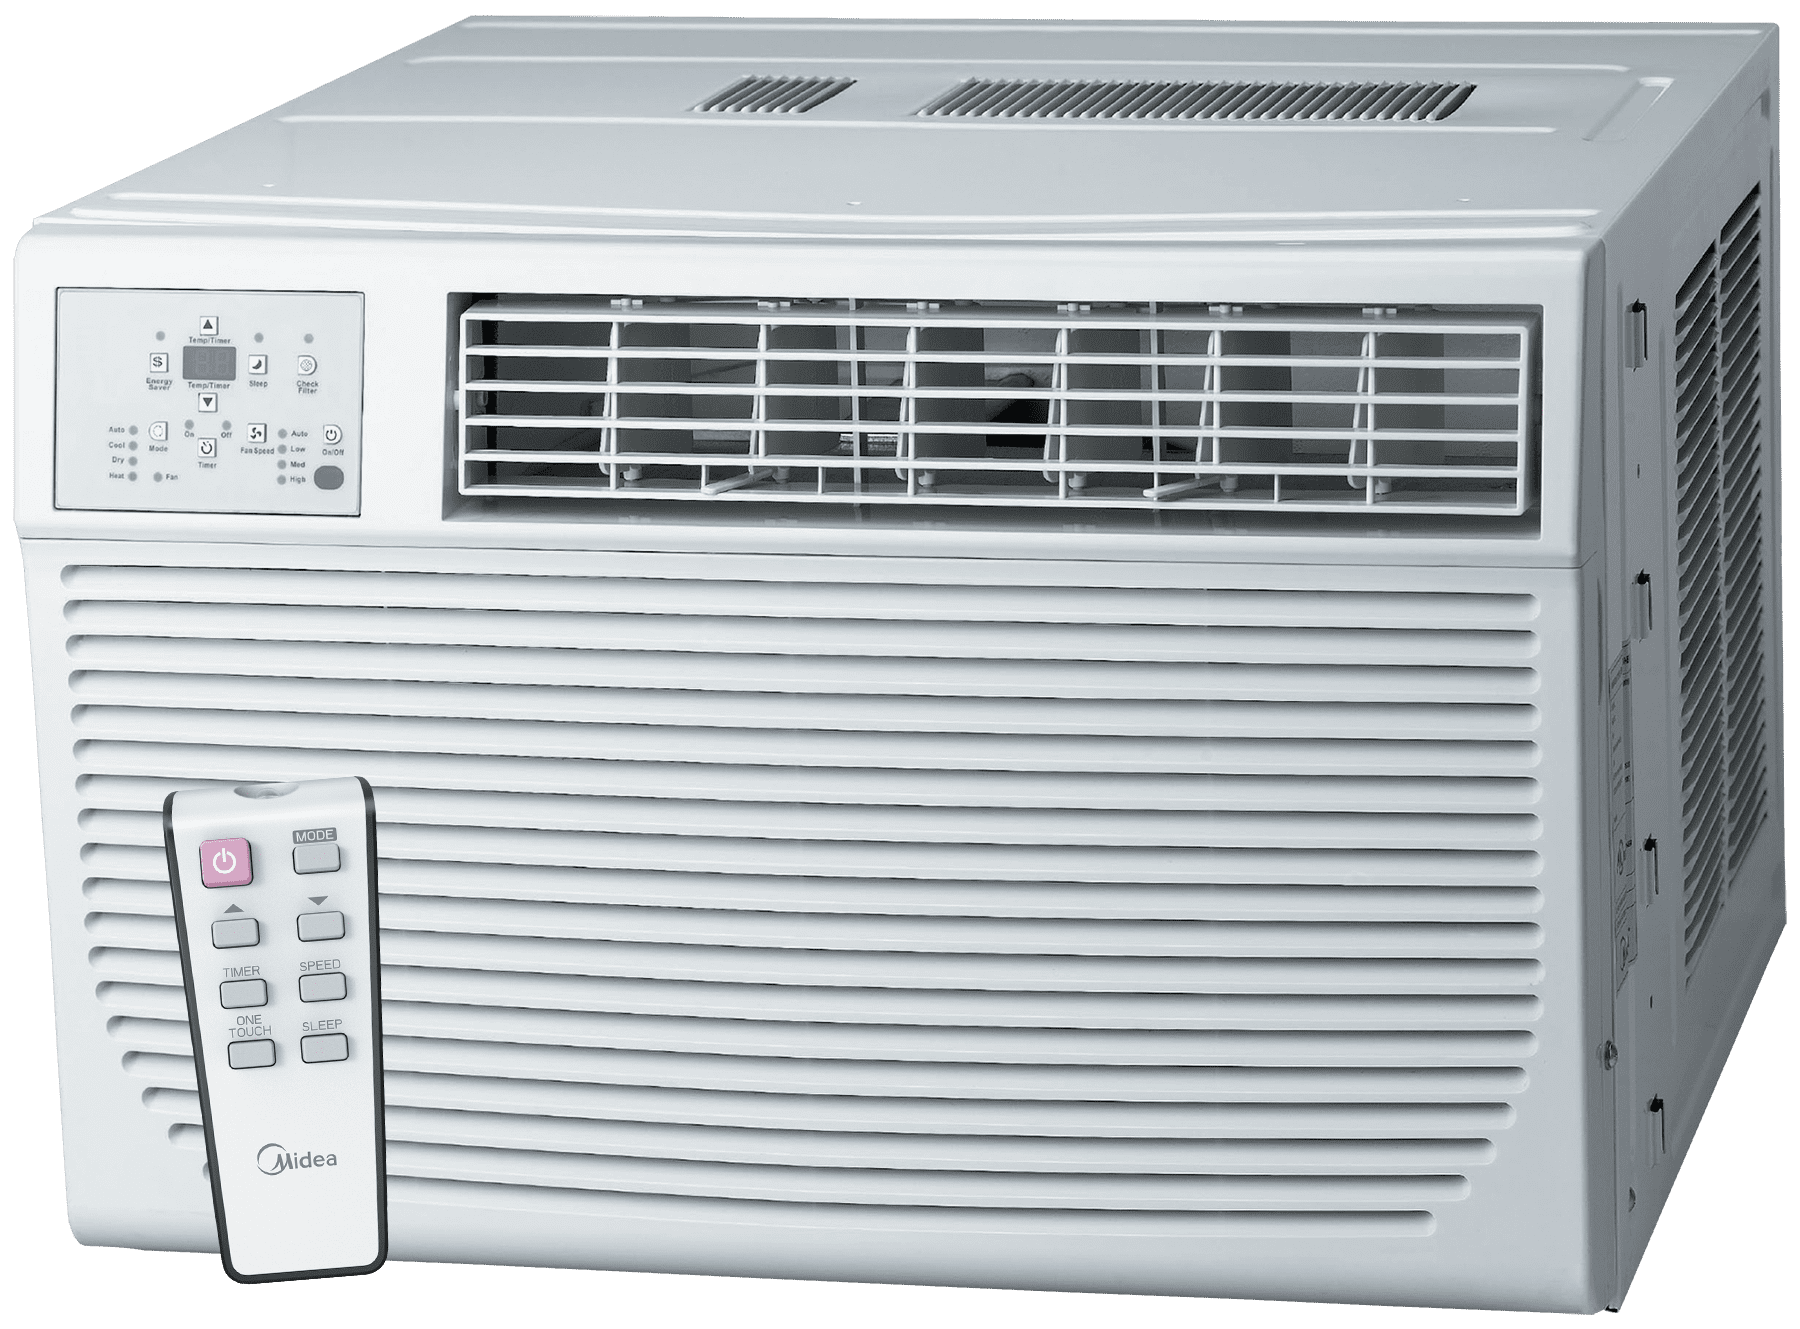 220v window heat pump only fan